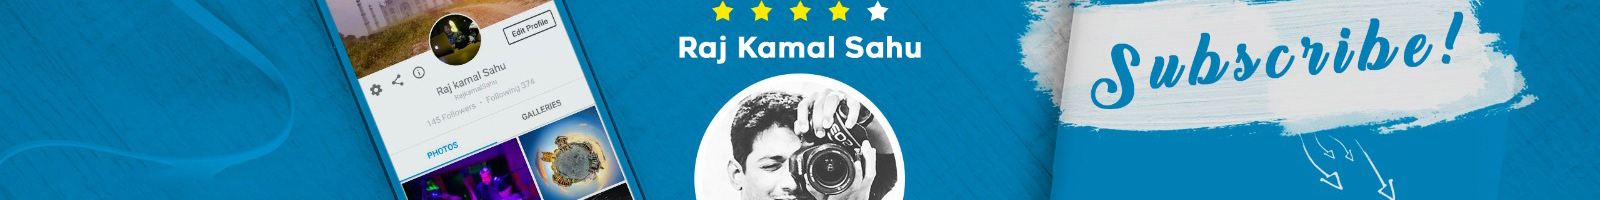 Raj Kamal Sahu's profile banner